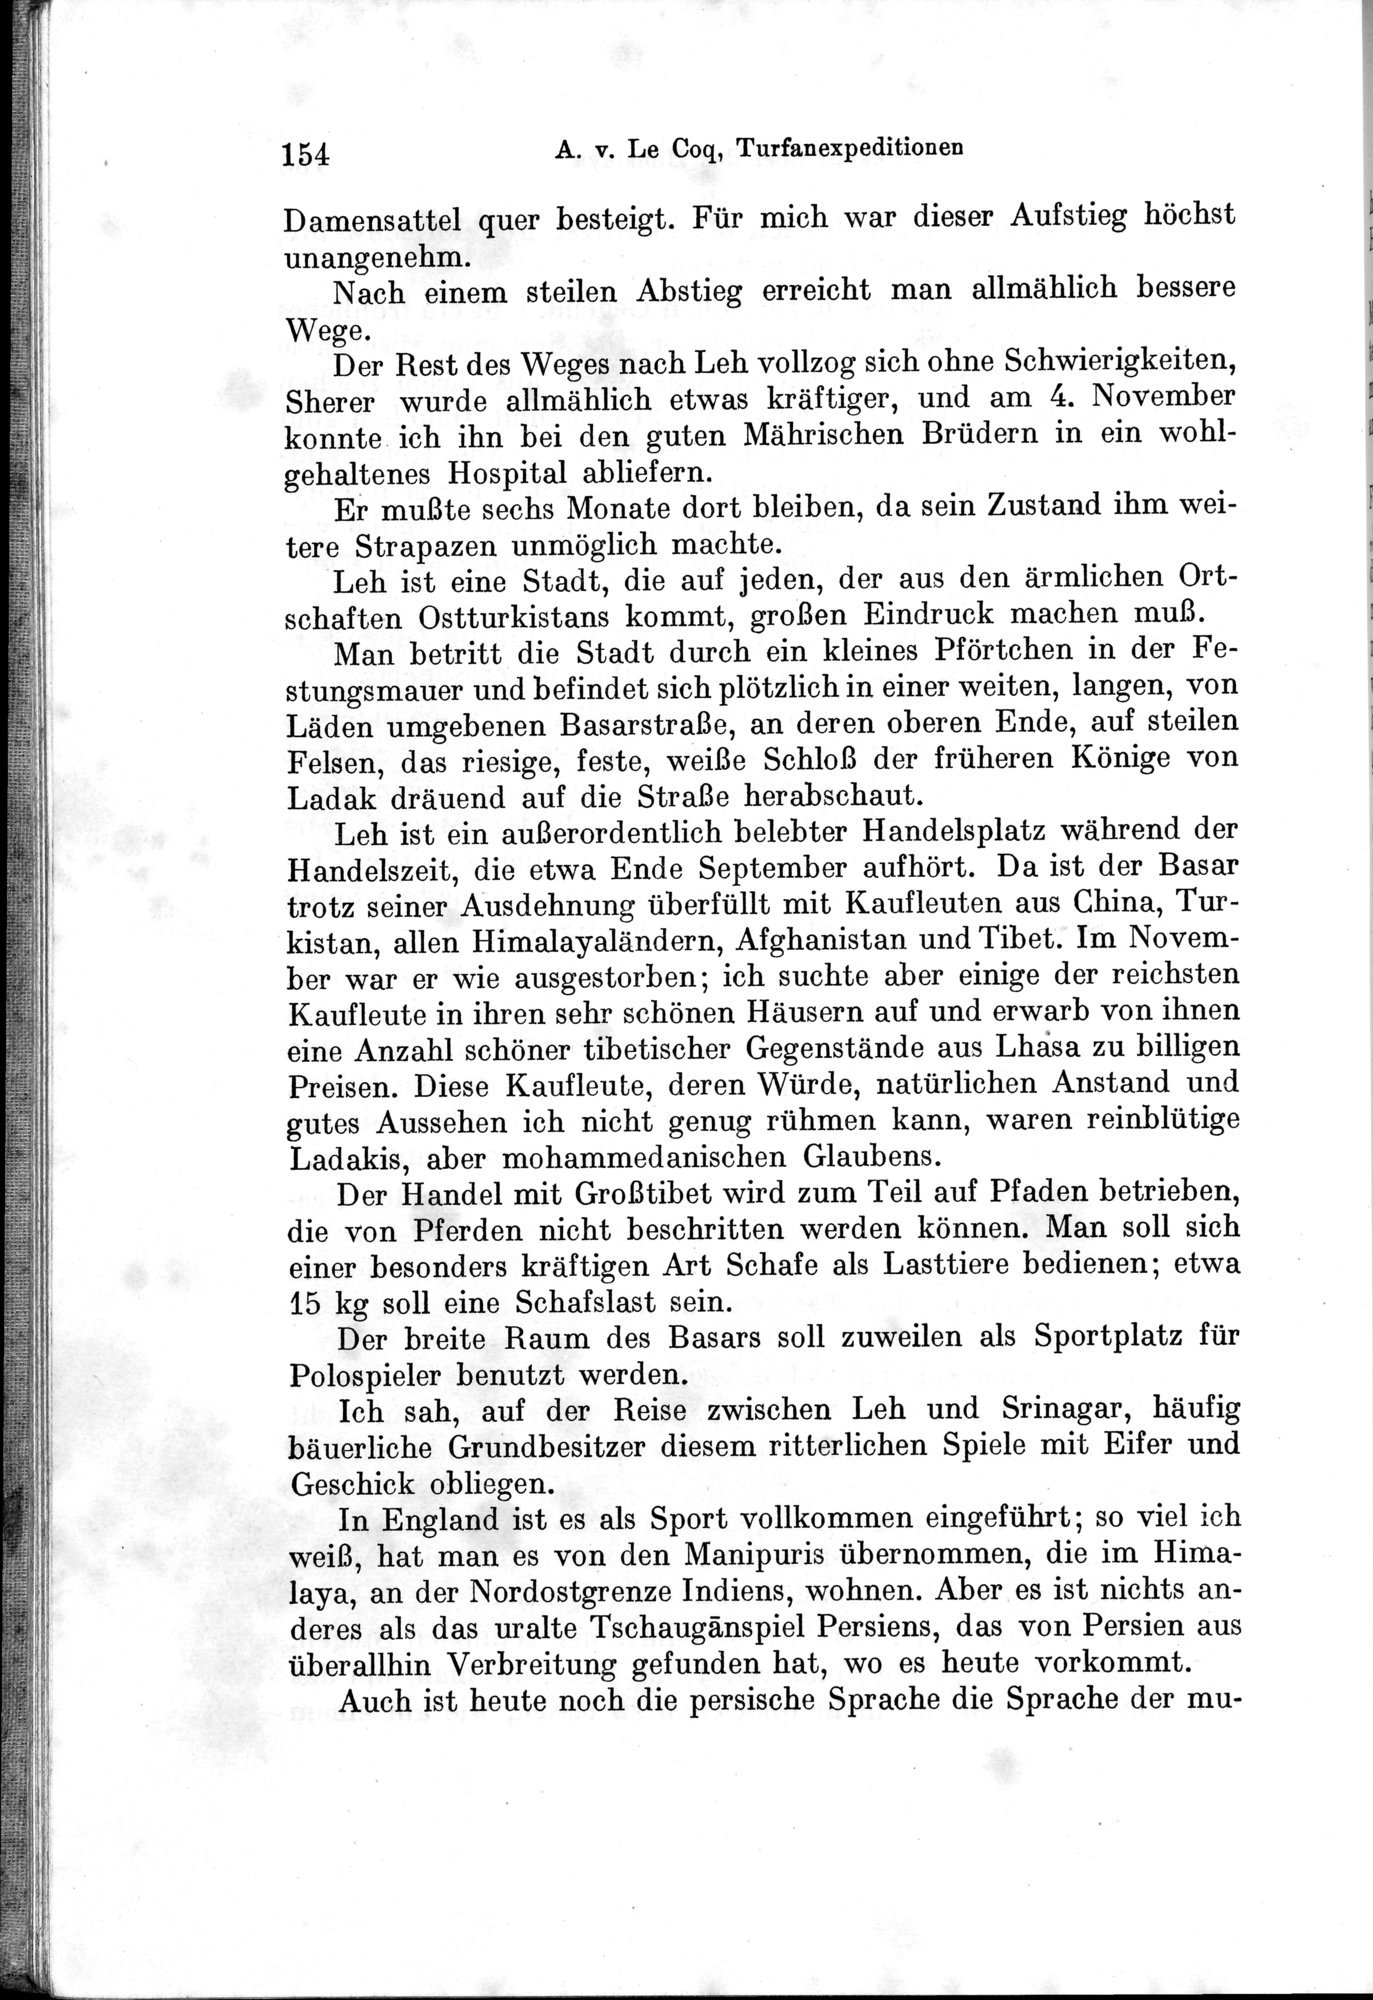 Auf Hellas Spuren in Ostturkistan : vol.1 / 222 ページ（白黒高解像度画像）